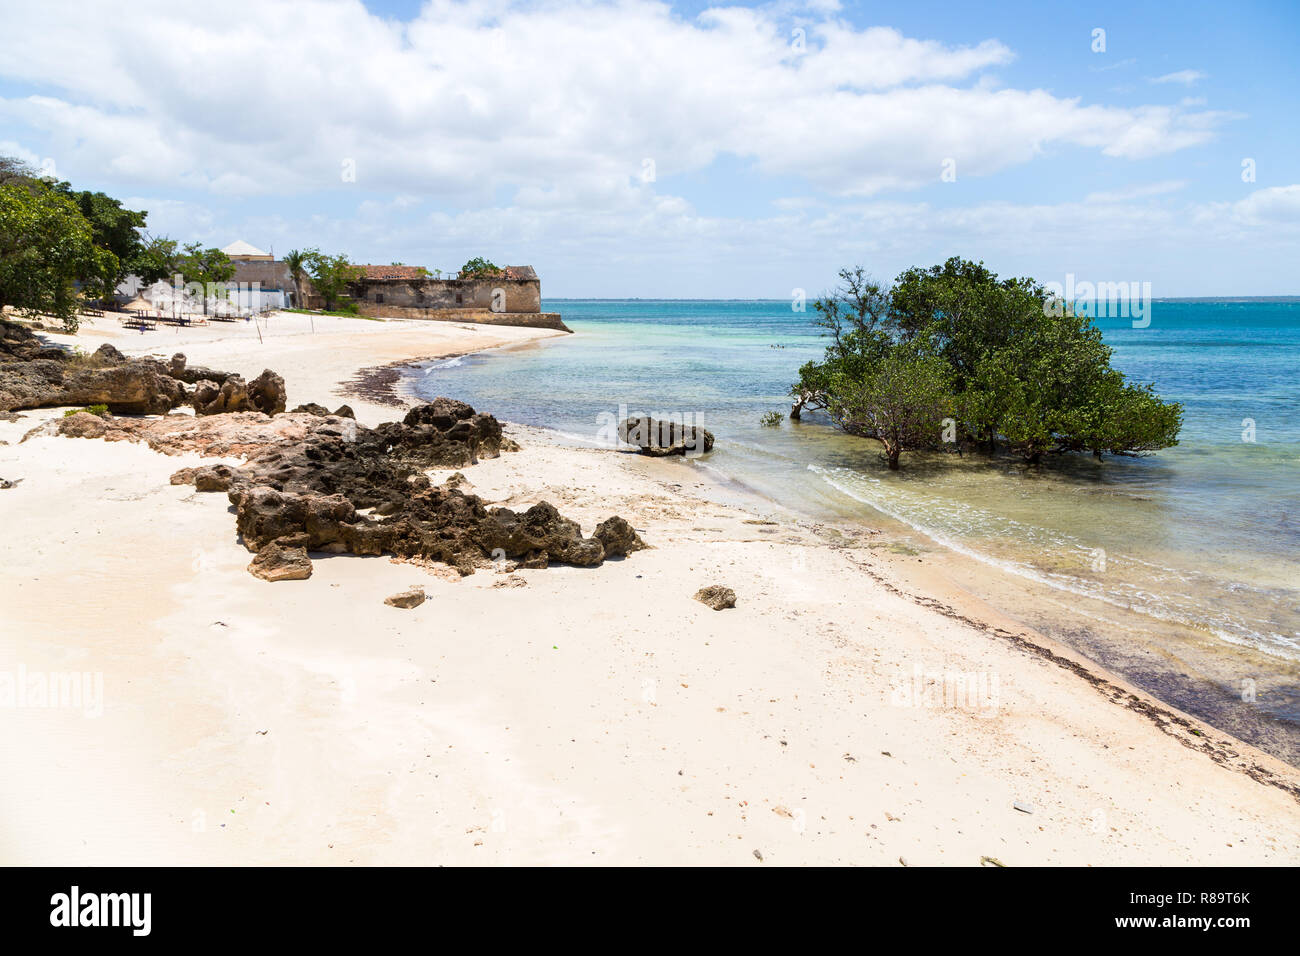 La plage déserte de l'île de Mozambique (Ilha de Mocambique), les mangroves et les vestiges d'une maison coloniale, de l'océan Indien. Nampula. L'Afrique de l'est portugaise. Banque D'Images